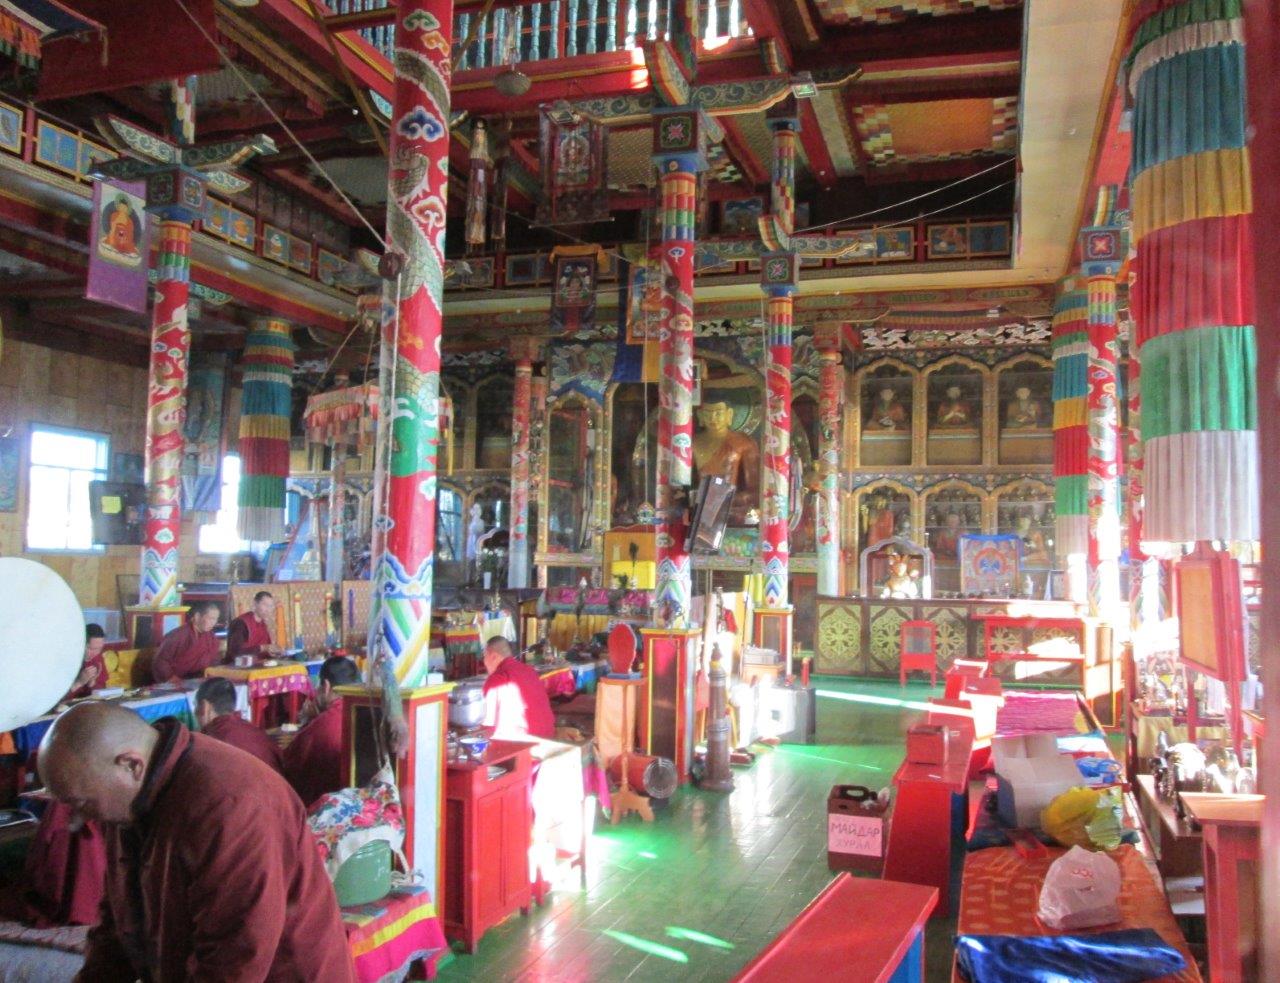 Сутрешната молитва на монасите в храма Цогчен-дуган
